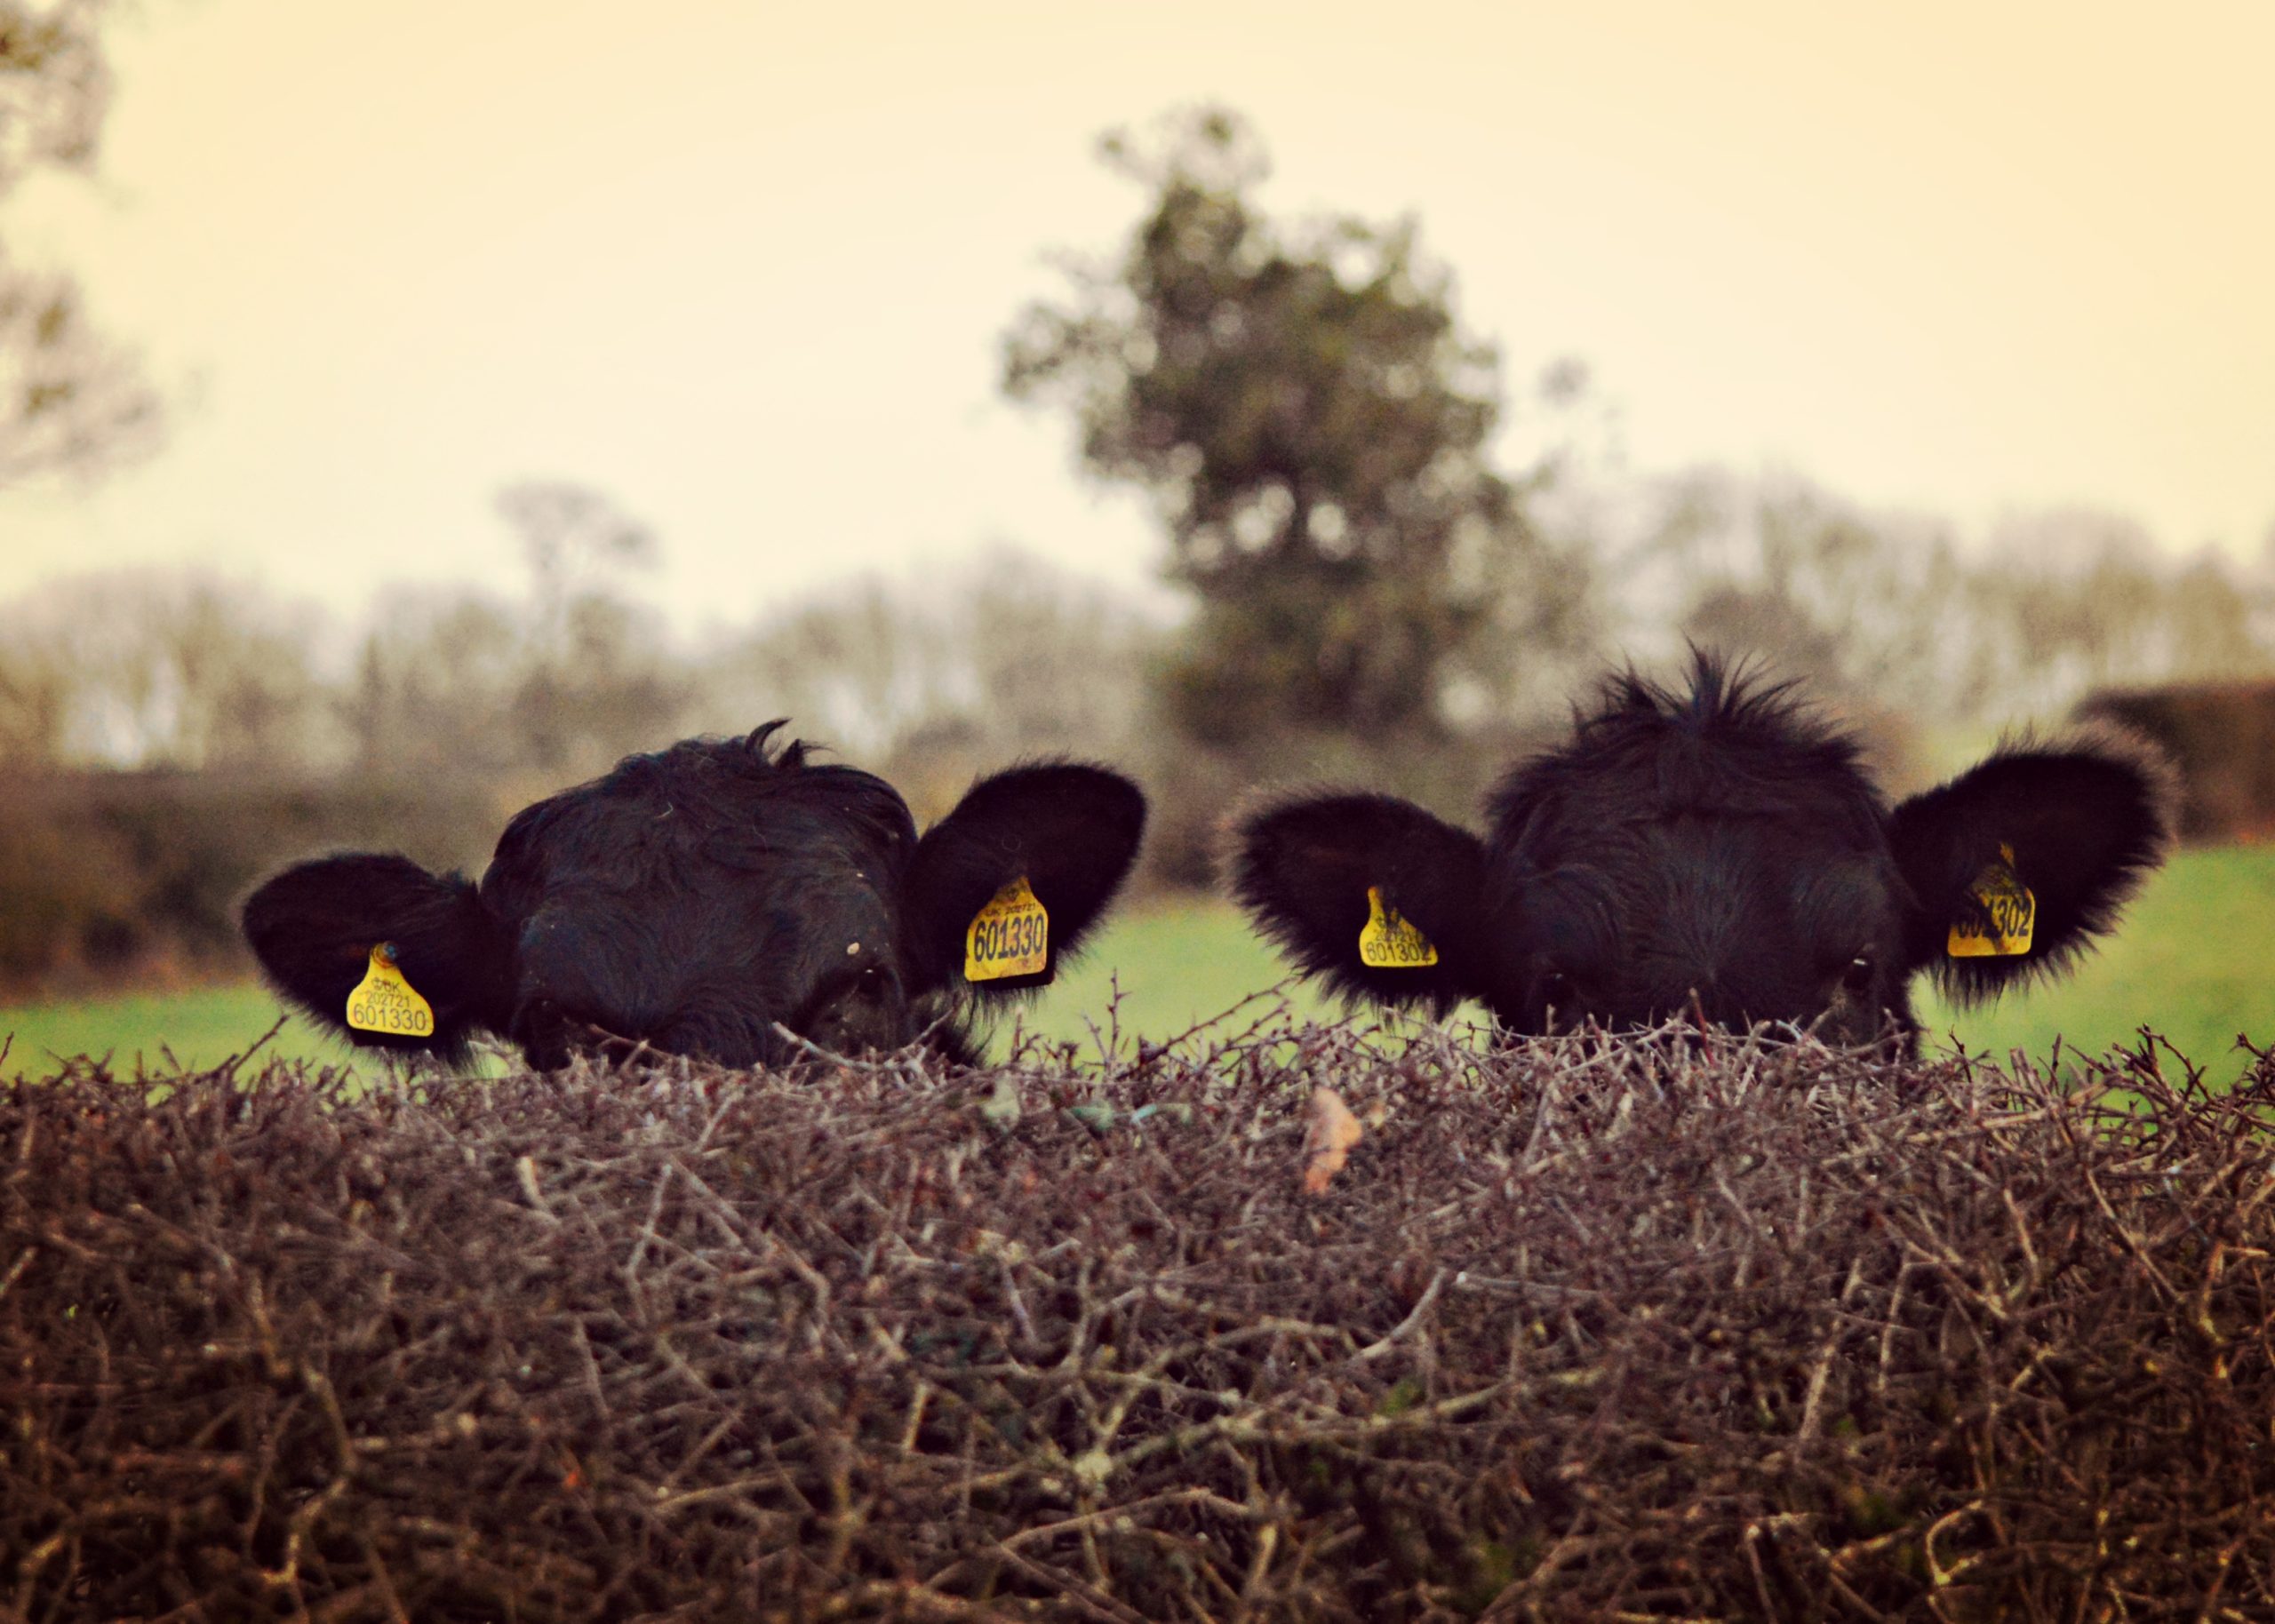 Fotografija 'Covert cows' fotografkinje Hather Ross snimljena u Birminghamu.